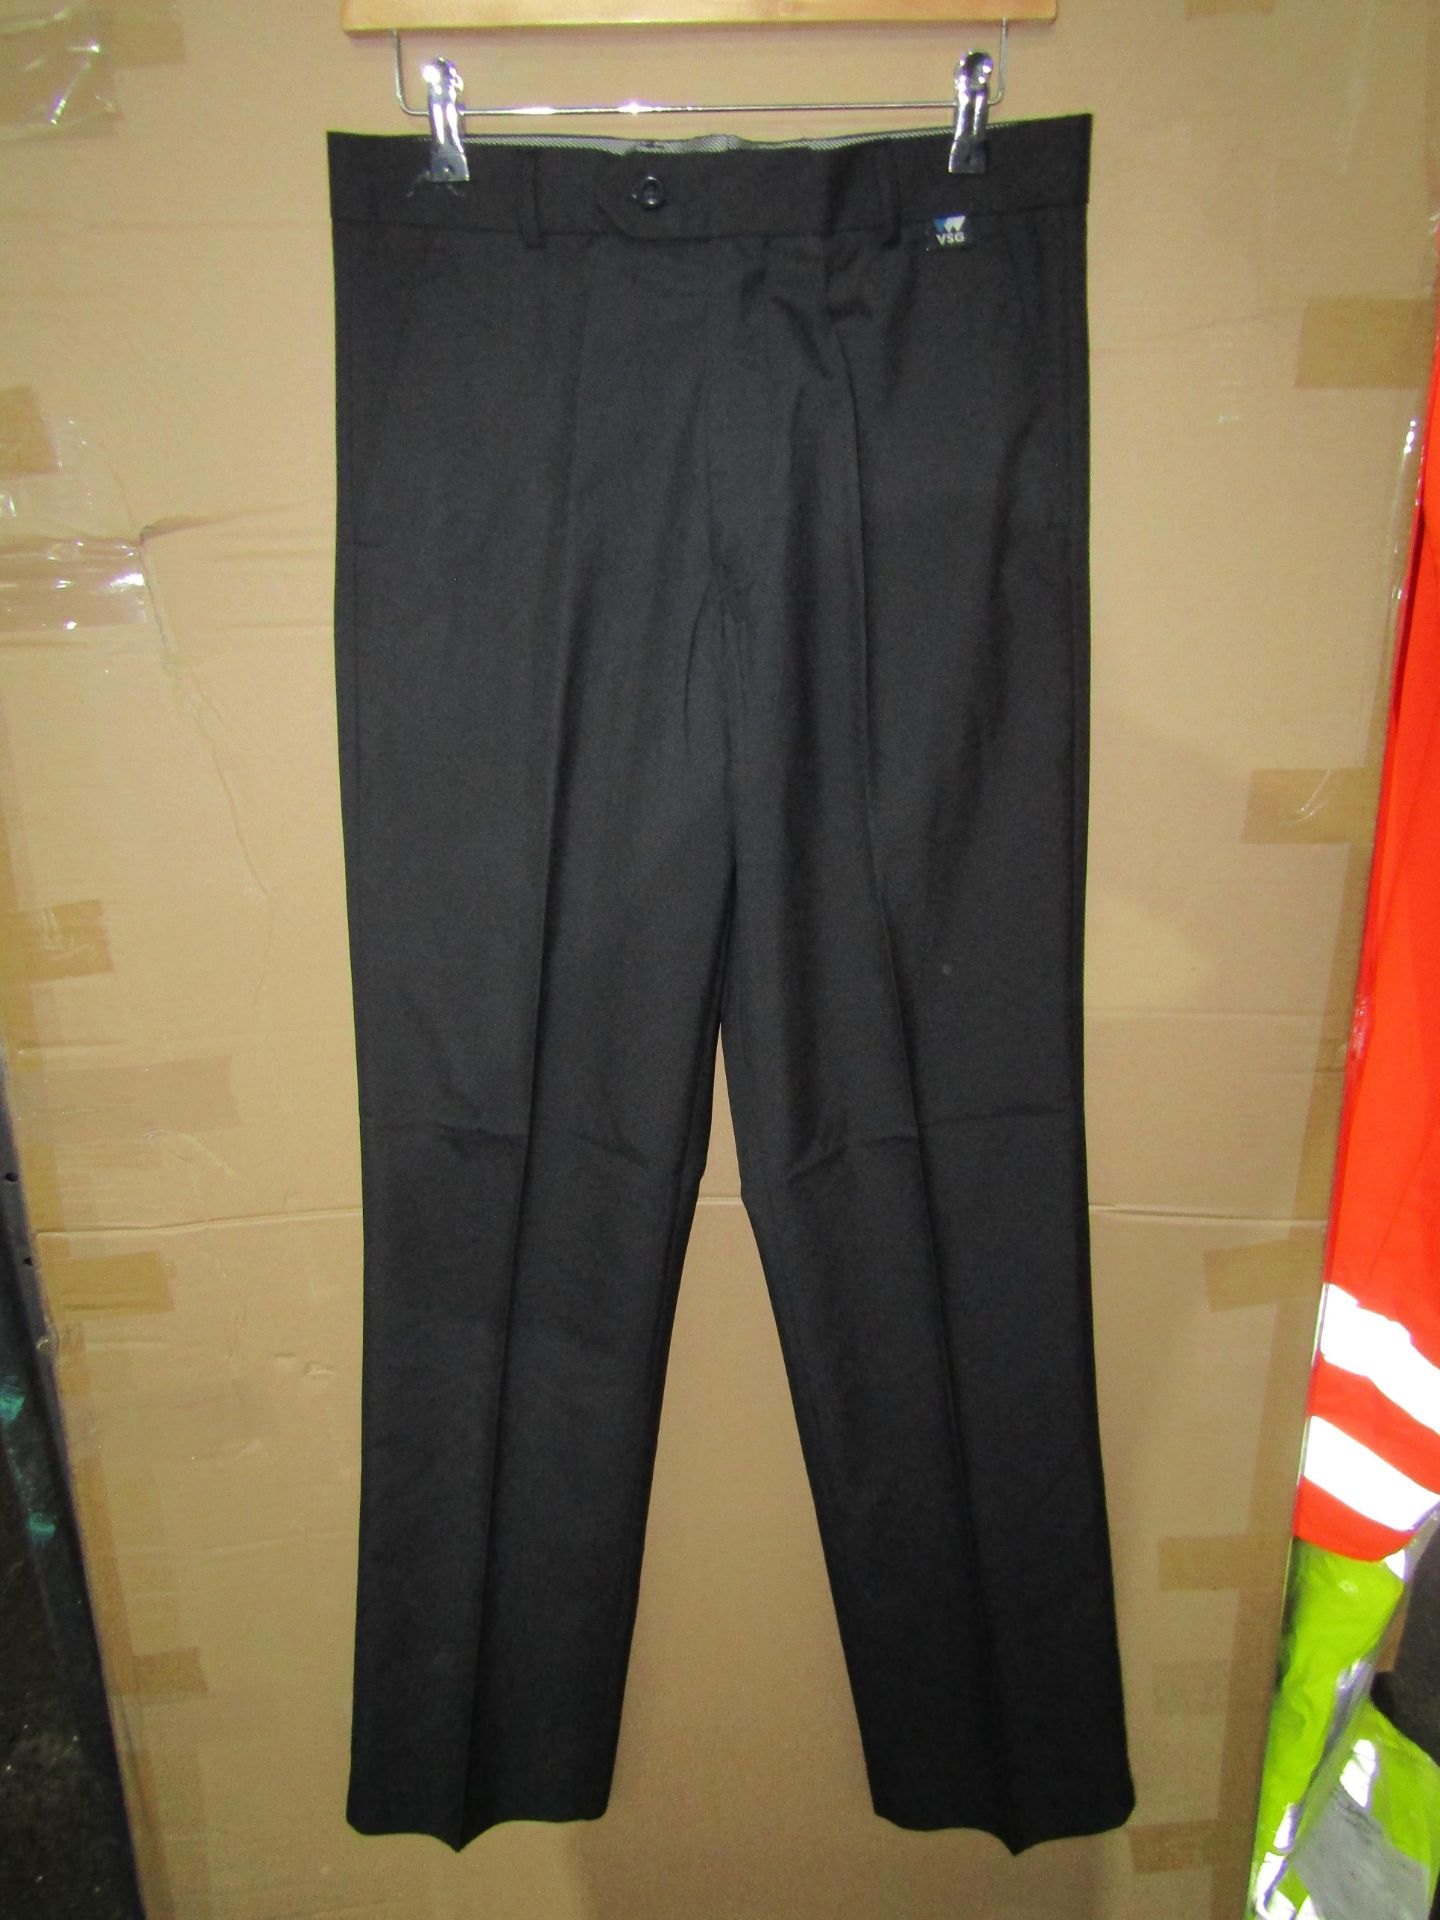 Smart Wear - Black Trousers - Size 32L - New & Packaged.